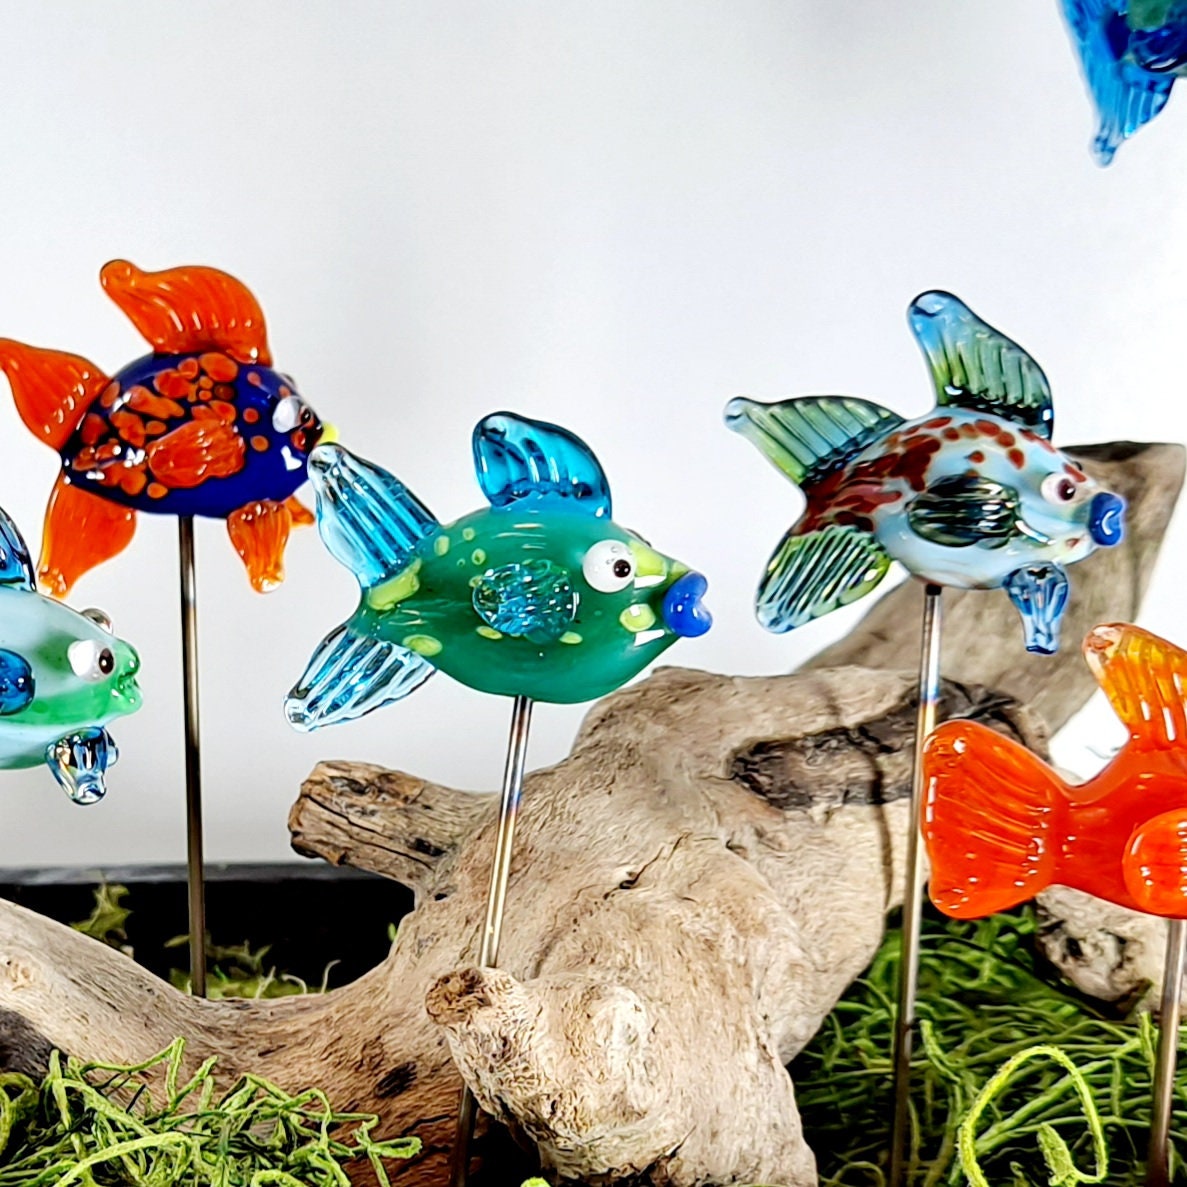 Miniature Goldfish (5pc) - Miniature Fish - Micro Landscape - Mini Garden -  Fairy Garden Fish - Terrarium Decor - Zen Garden